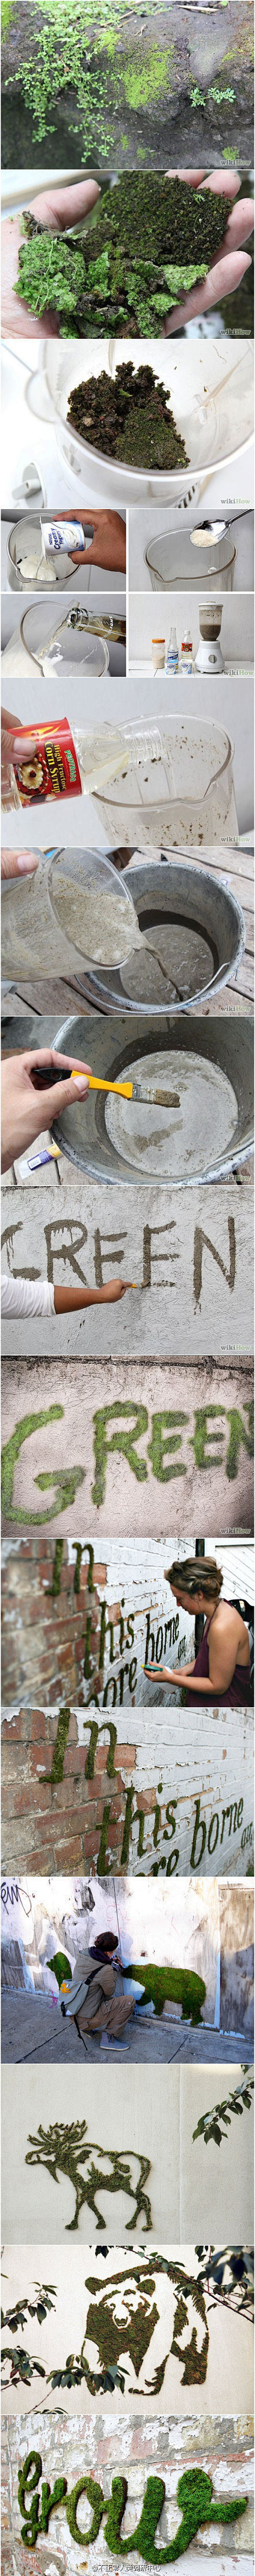 介绍一种新的街头涂鸦方式，艺术家用苔藓、...